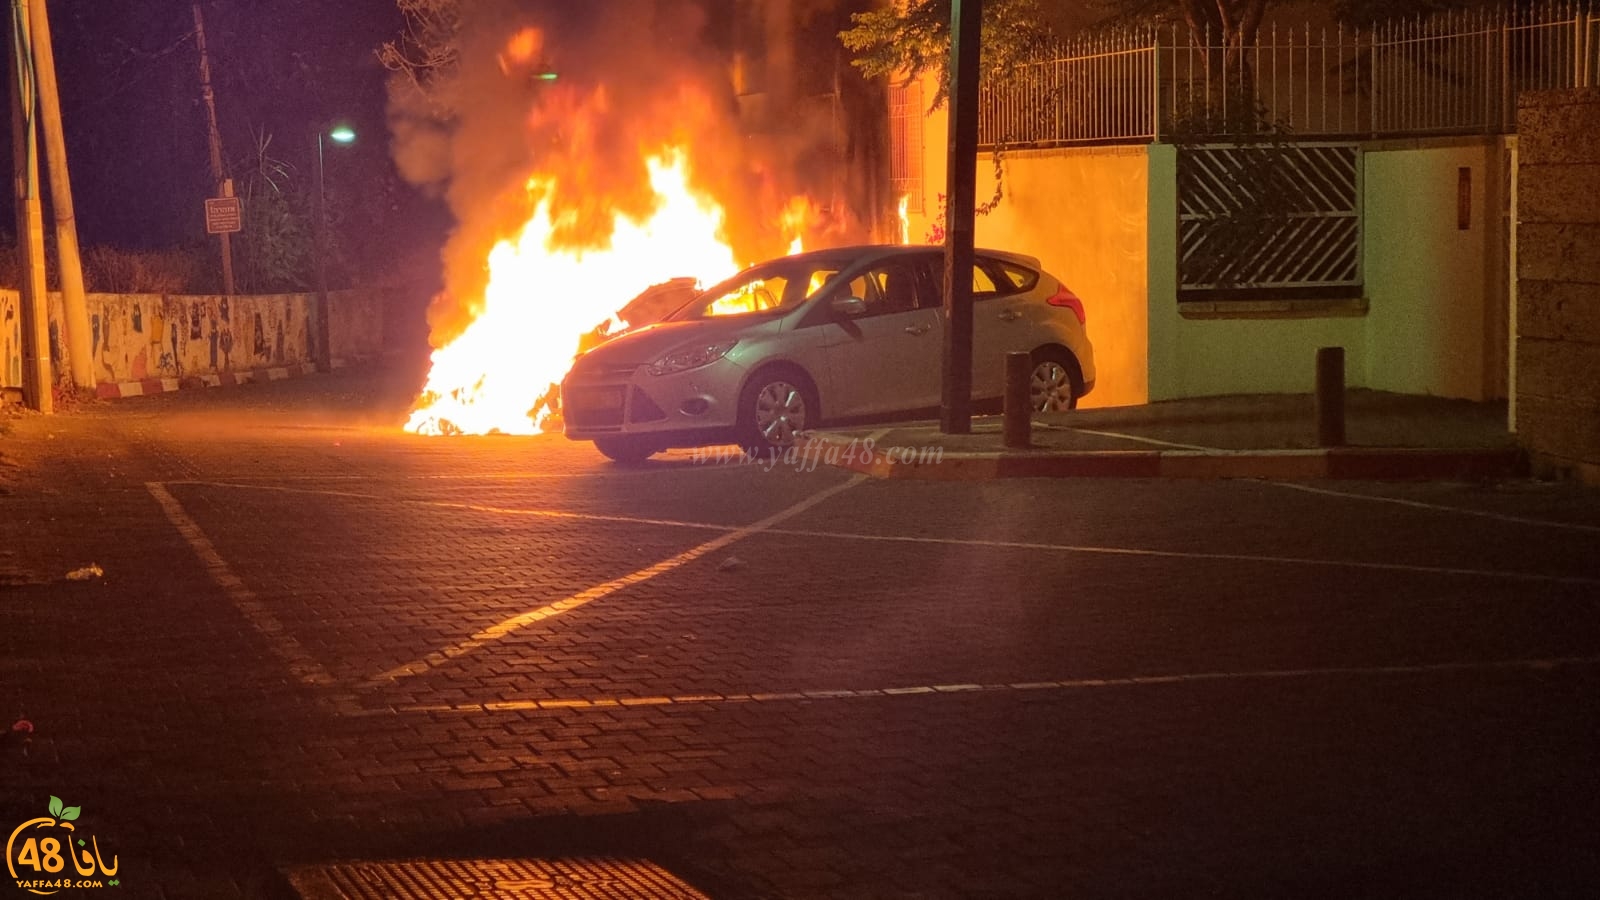  فيديو: ليلة حرائق في يافا - اضرام النيران في بيت وعدة مركبات